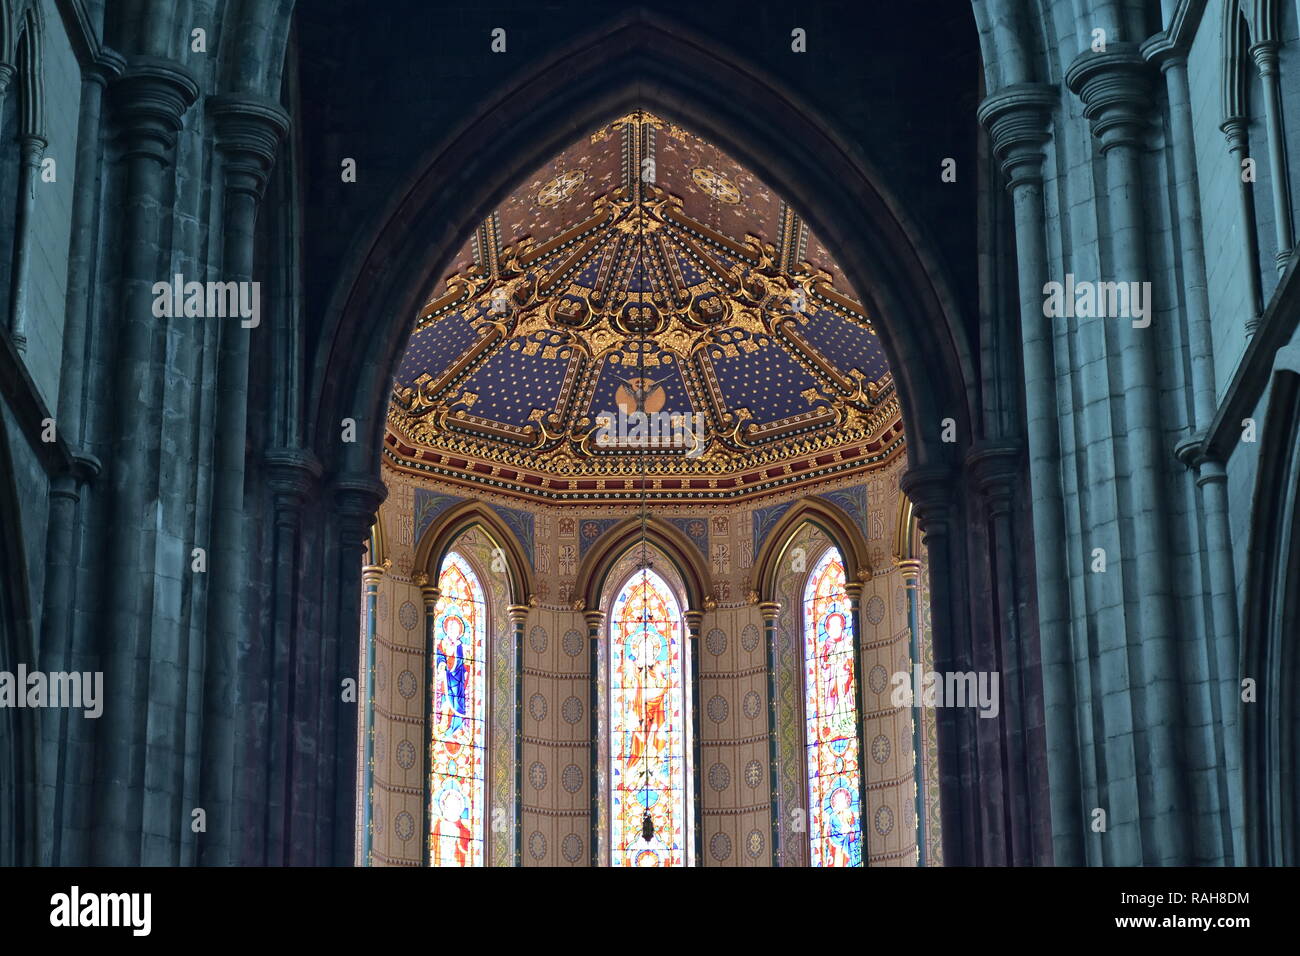 Reich dekoriert und gewölbte Decke Glasfenster kontrastieren mit glatten Stein Wände und Säulen der St. Mary Cathedral in Kilkenny. Stockfoto